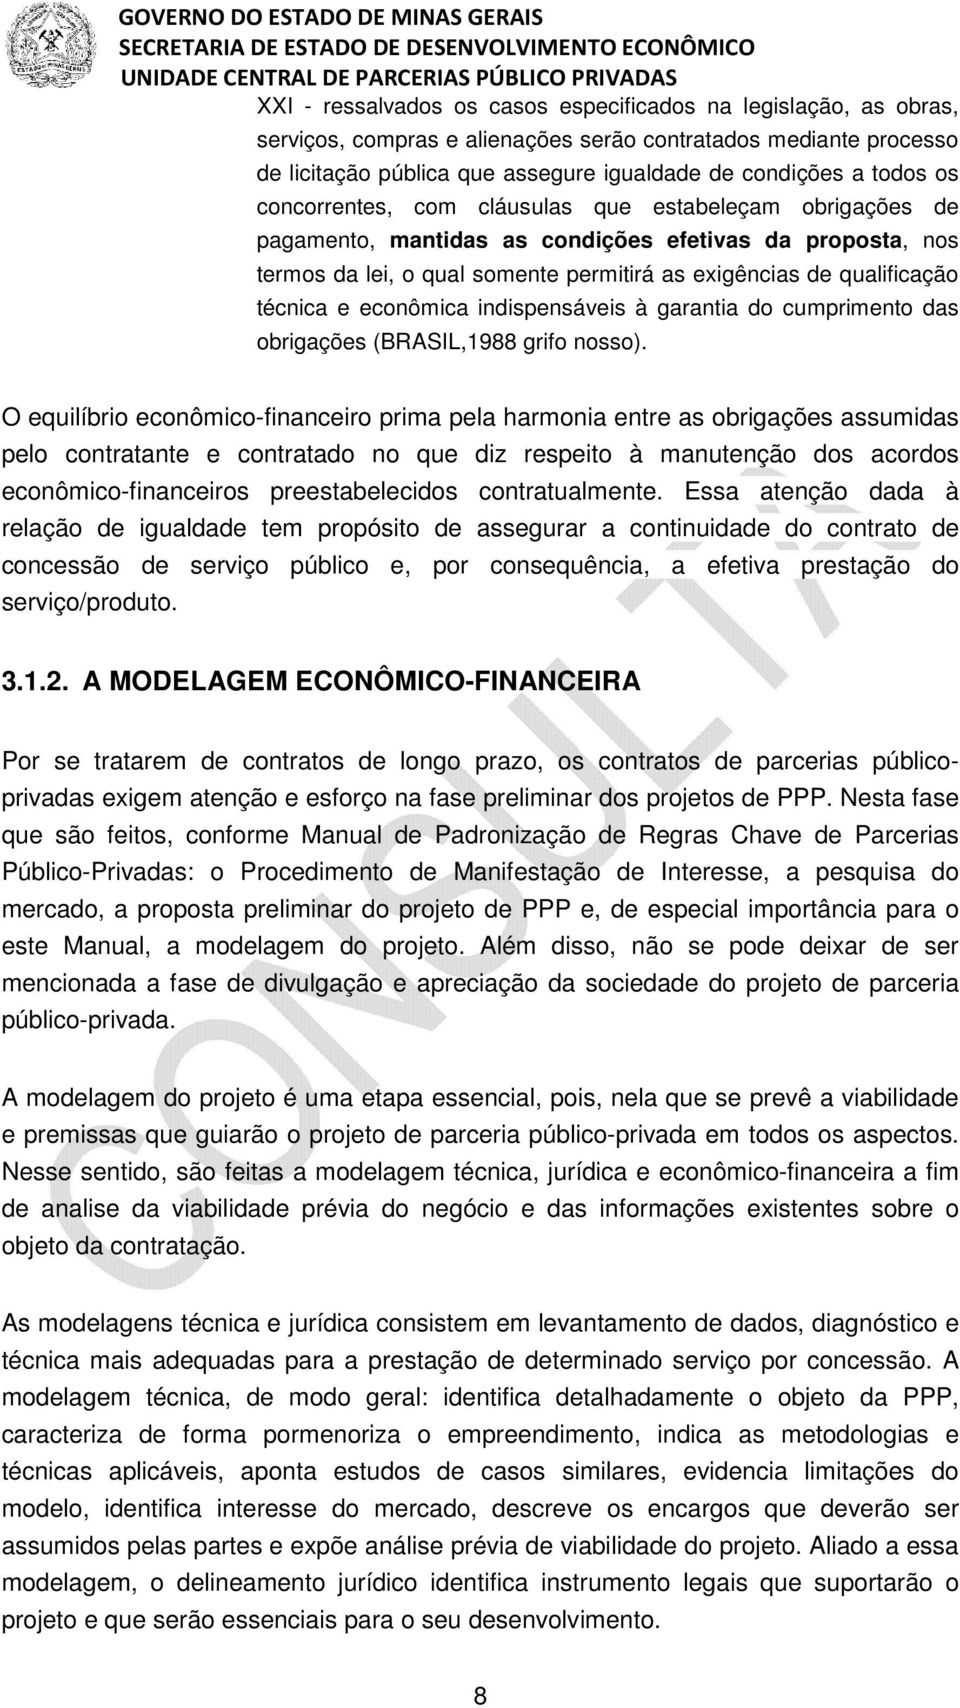 econômica indispensáveis à garantia do cumprimento das obrigações (BRASIL,1988 grifo nosso).